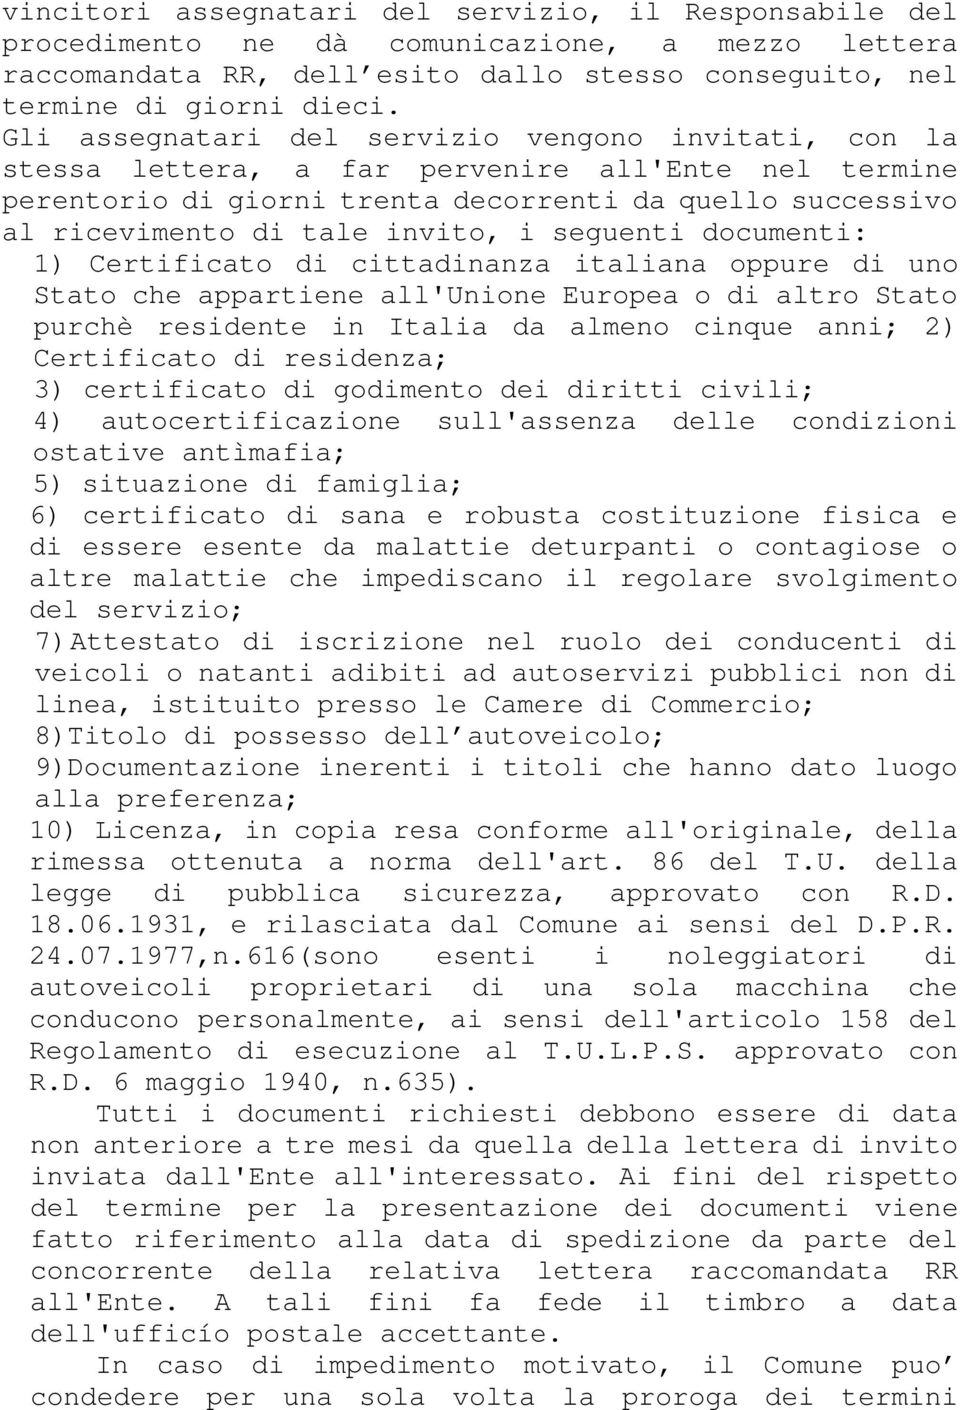 seguenti documenti: 1) Certificato di cittadinanza italiana oppure di uno Stato che appartiene all'unione Europea o di altro Stato purchè residente in Italia da almeno cinque anni; 2) Certificato di